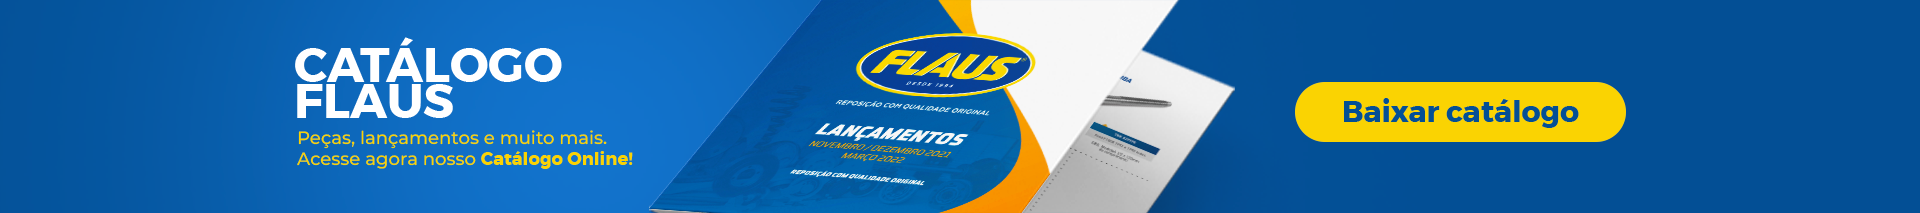 Catálogo Flaus I